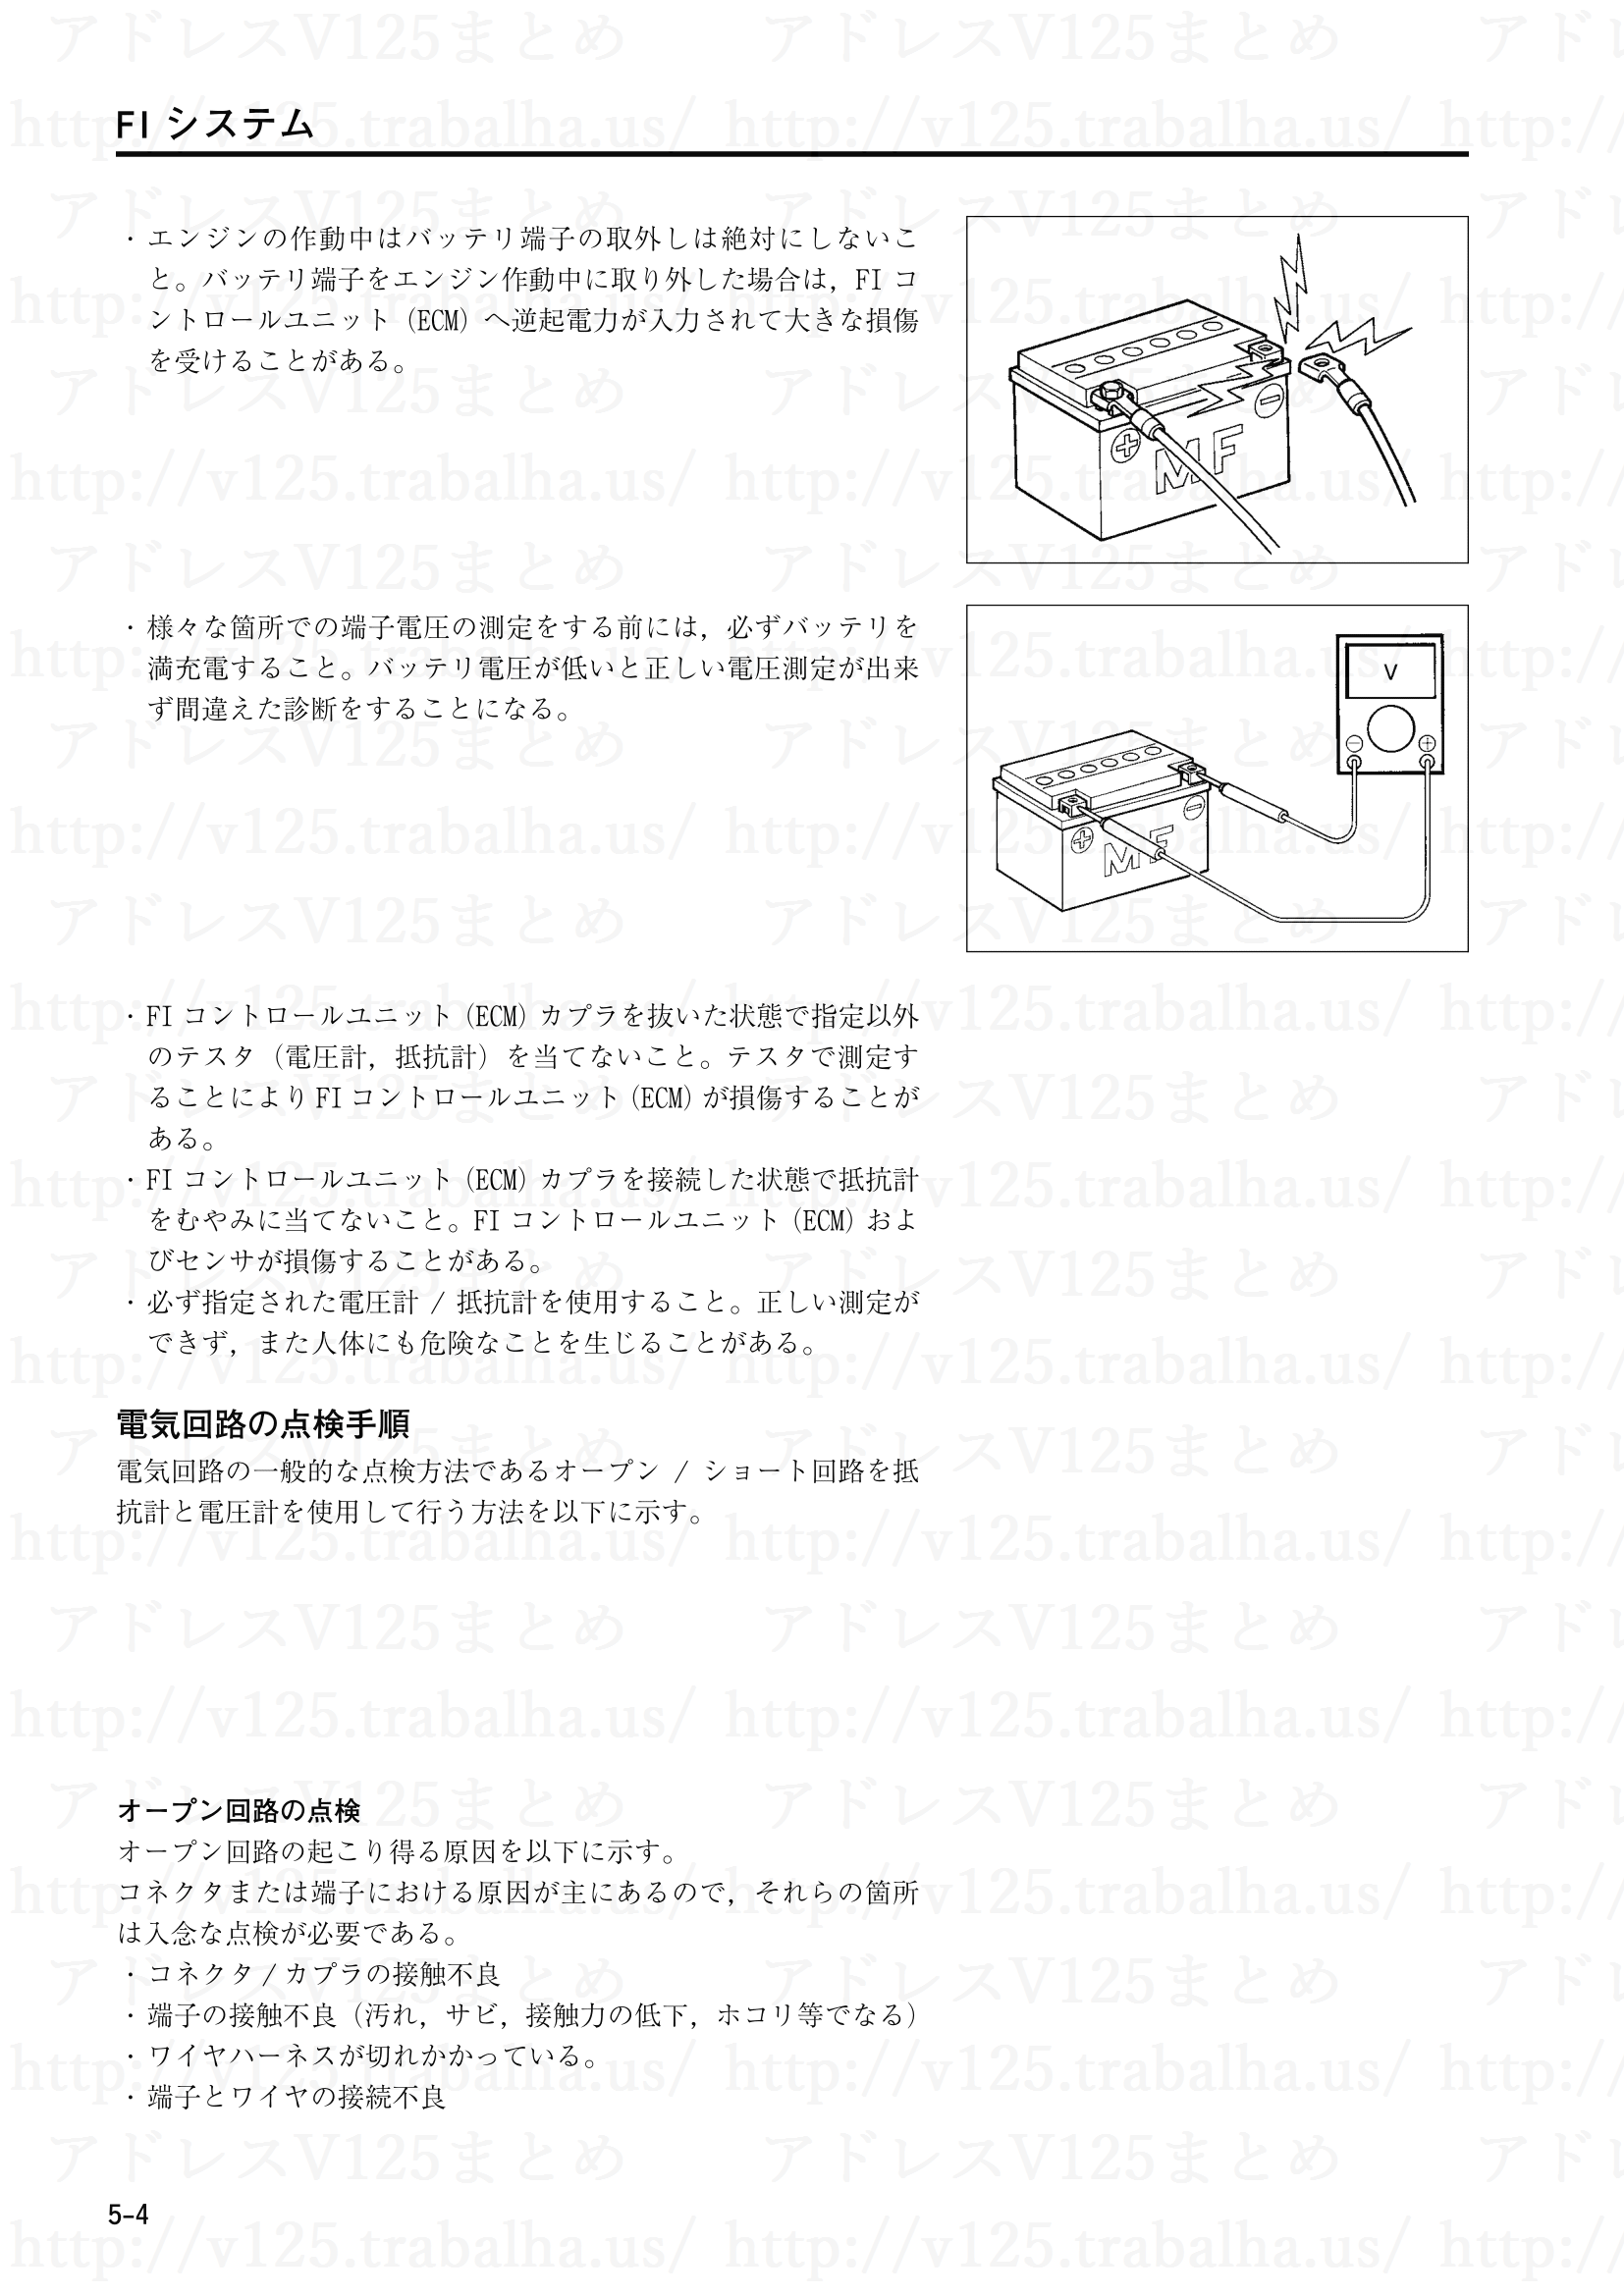 5-4【FIシステム】電気回路の点検手順